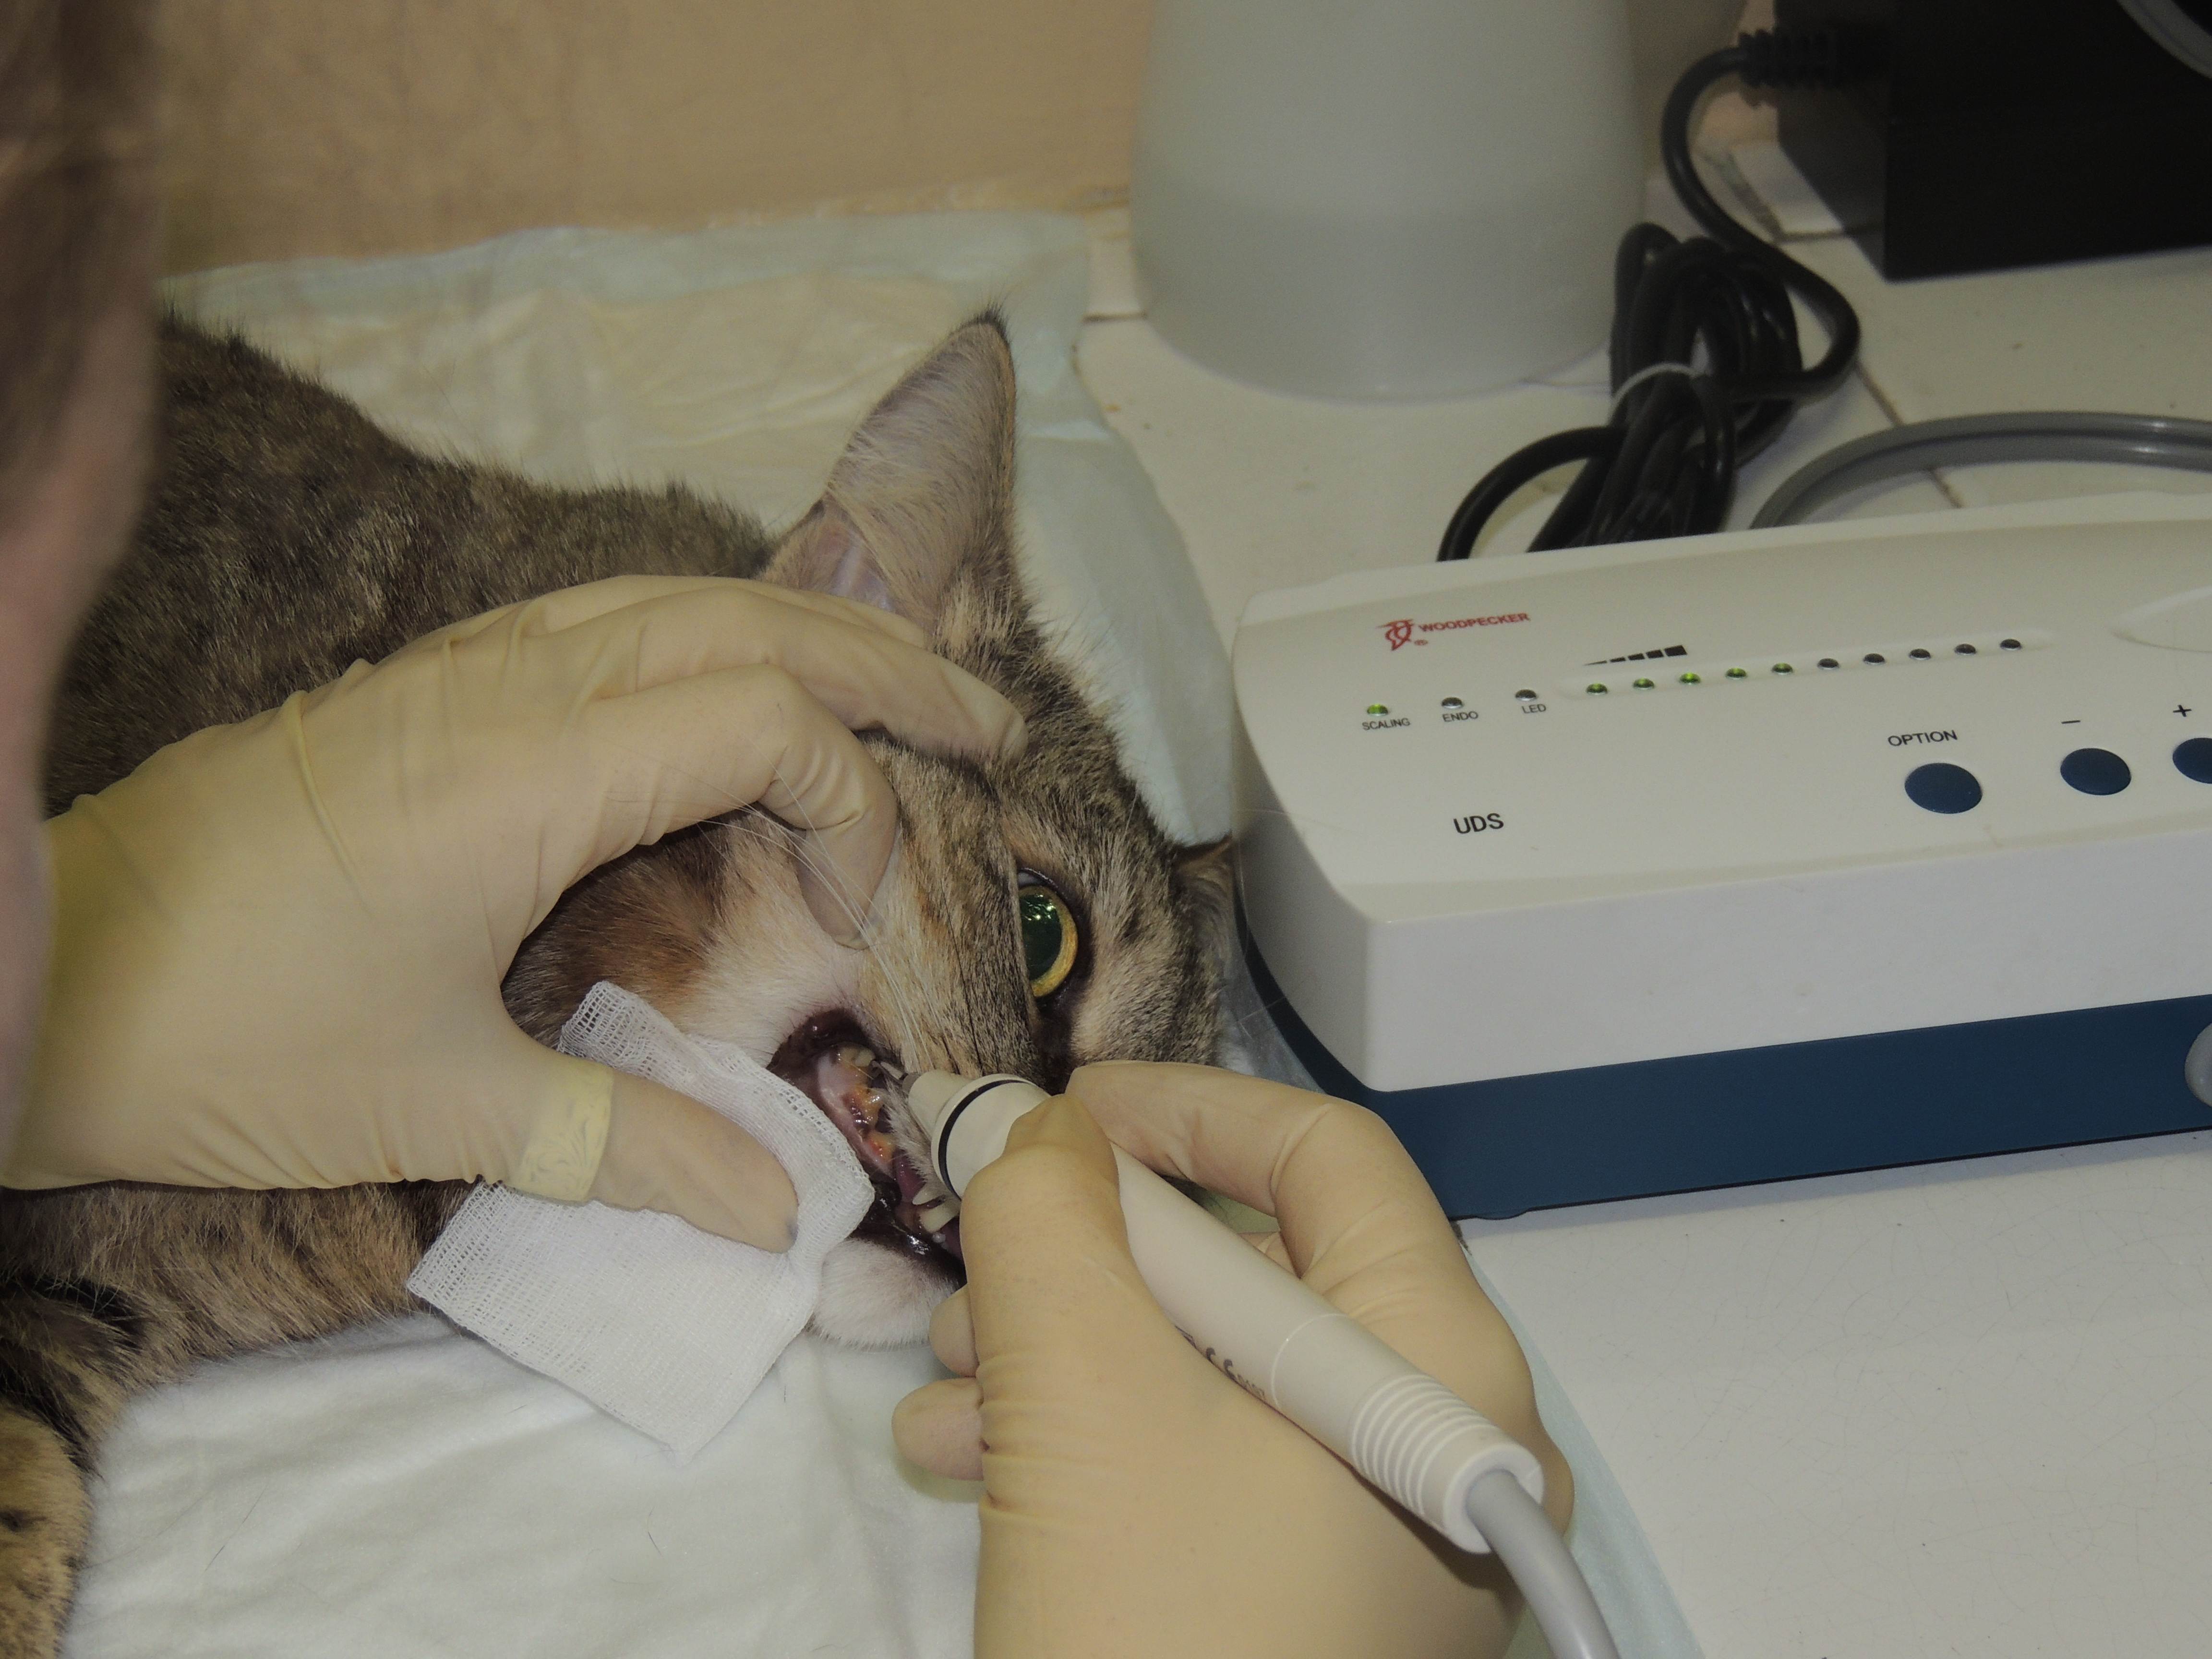 Болезни зубов у кошек: симптомы, признаки и причины | hill’s